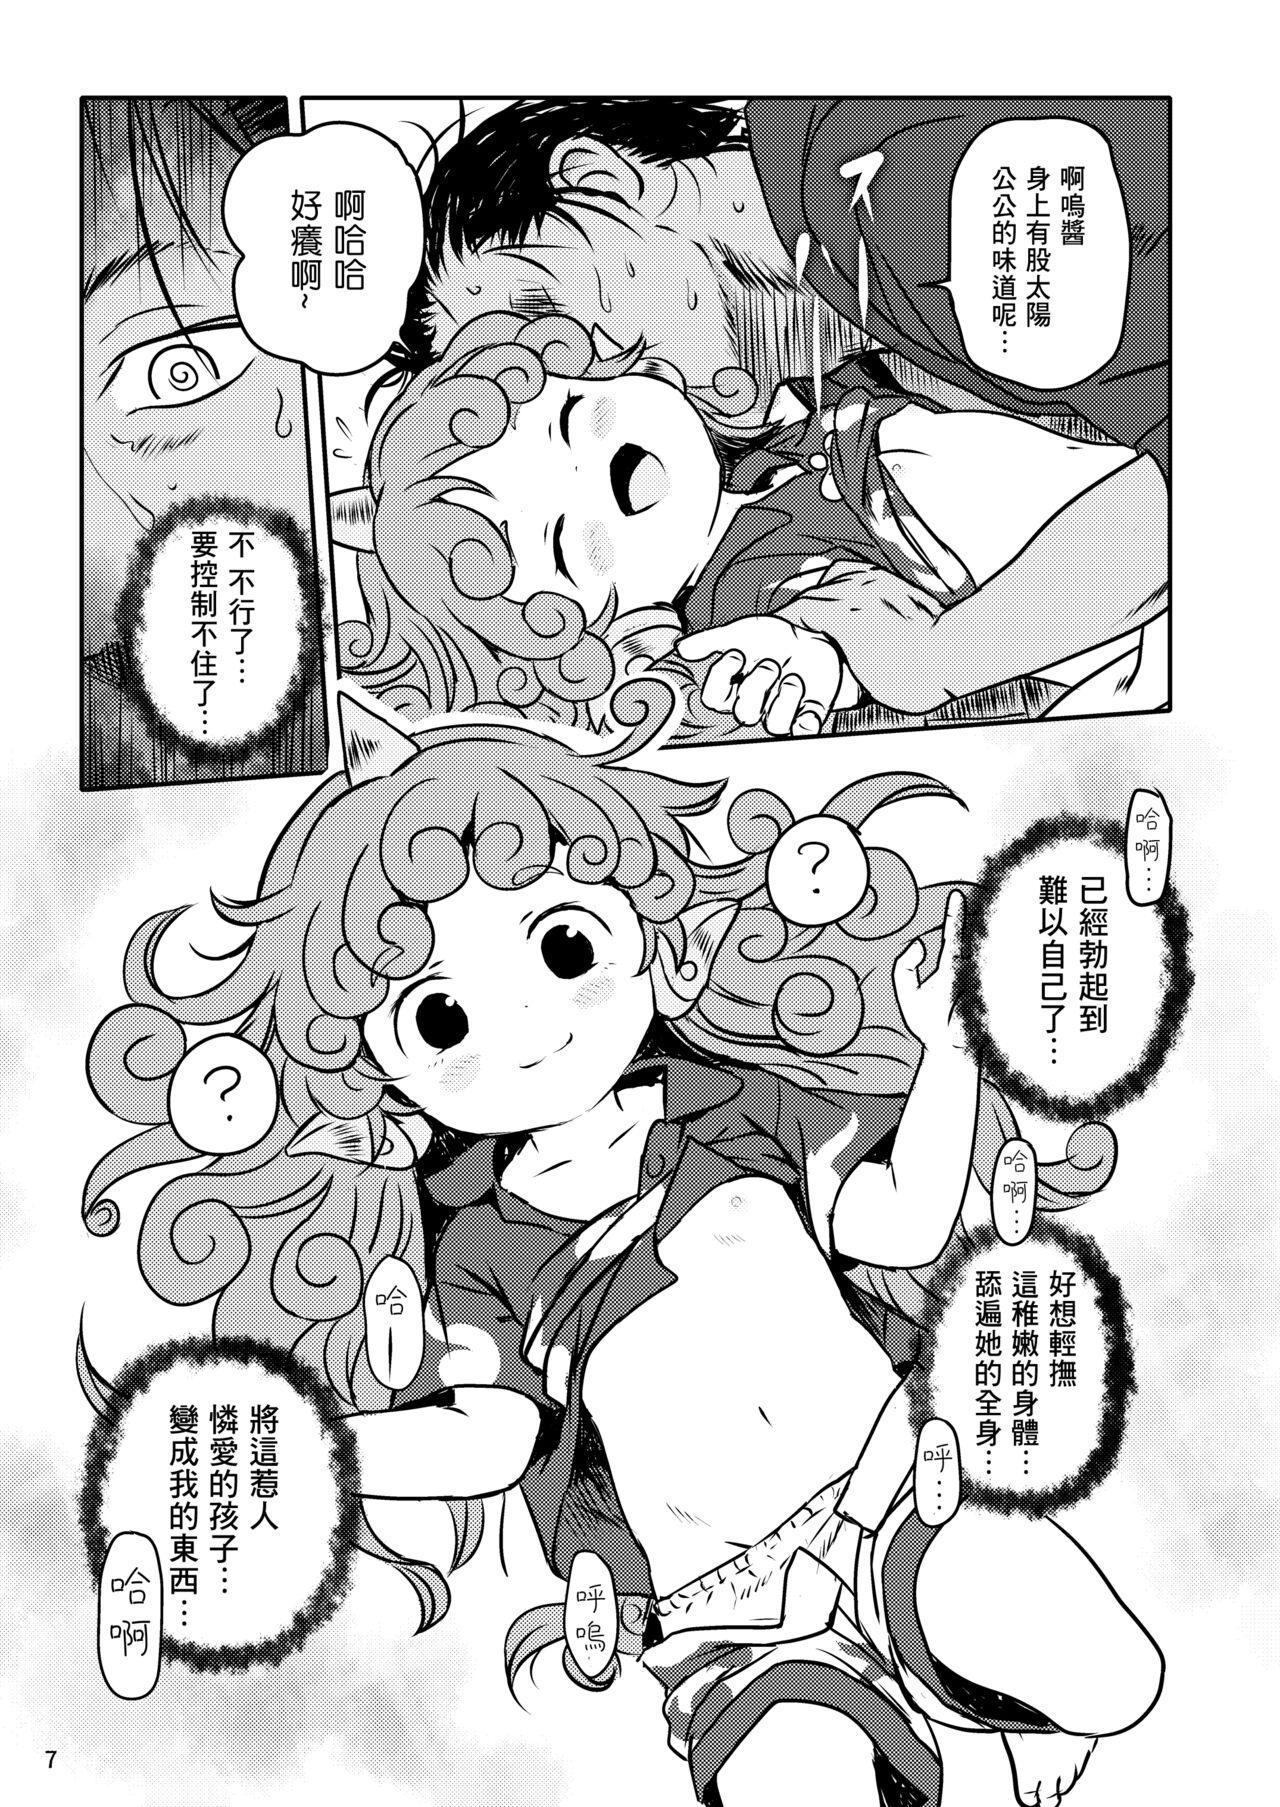 Bunda Haratte! Aun-chan! - Touhou project Jerk - Page 8